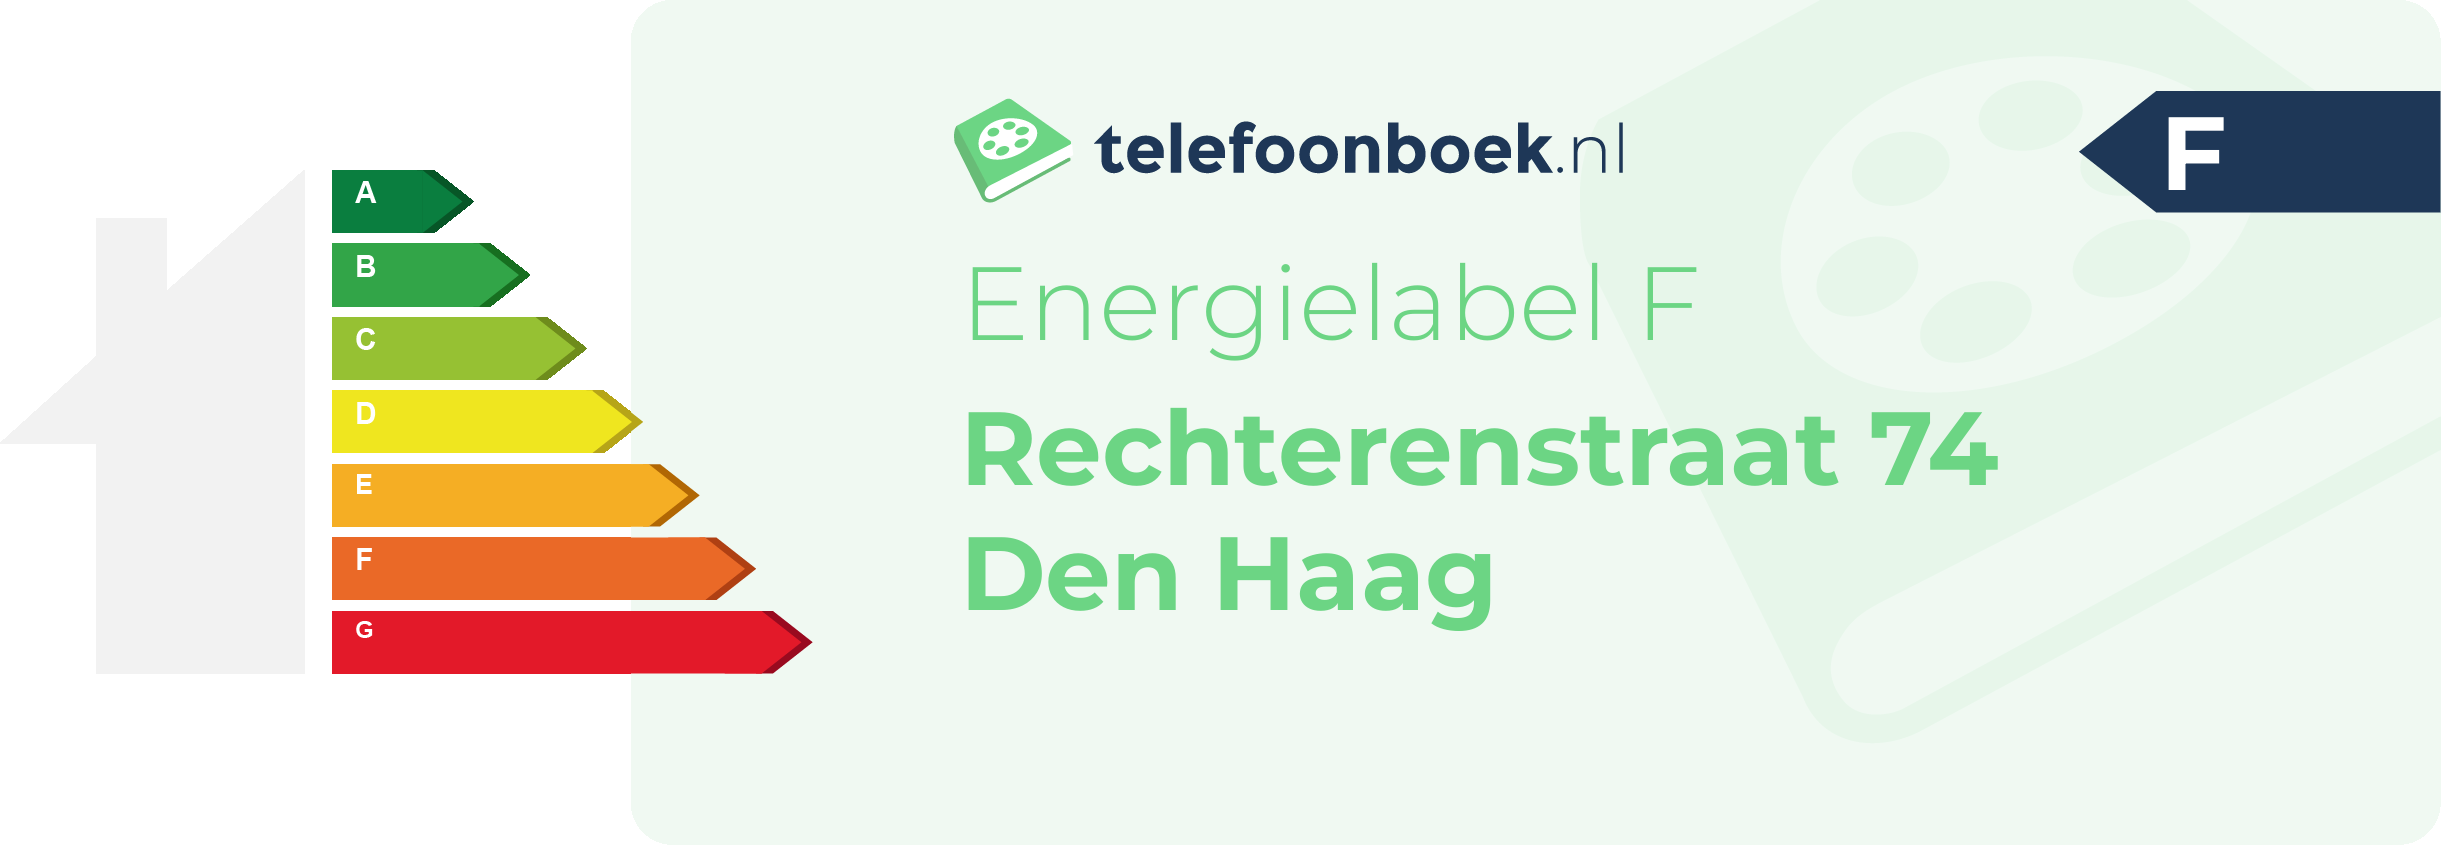 Energielabel Rechterenstraat 74 Den Haag